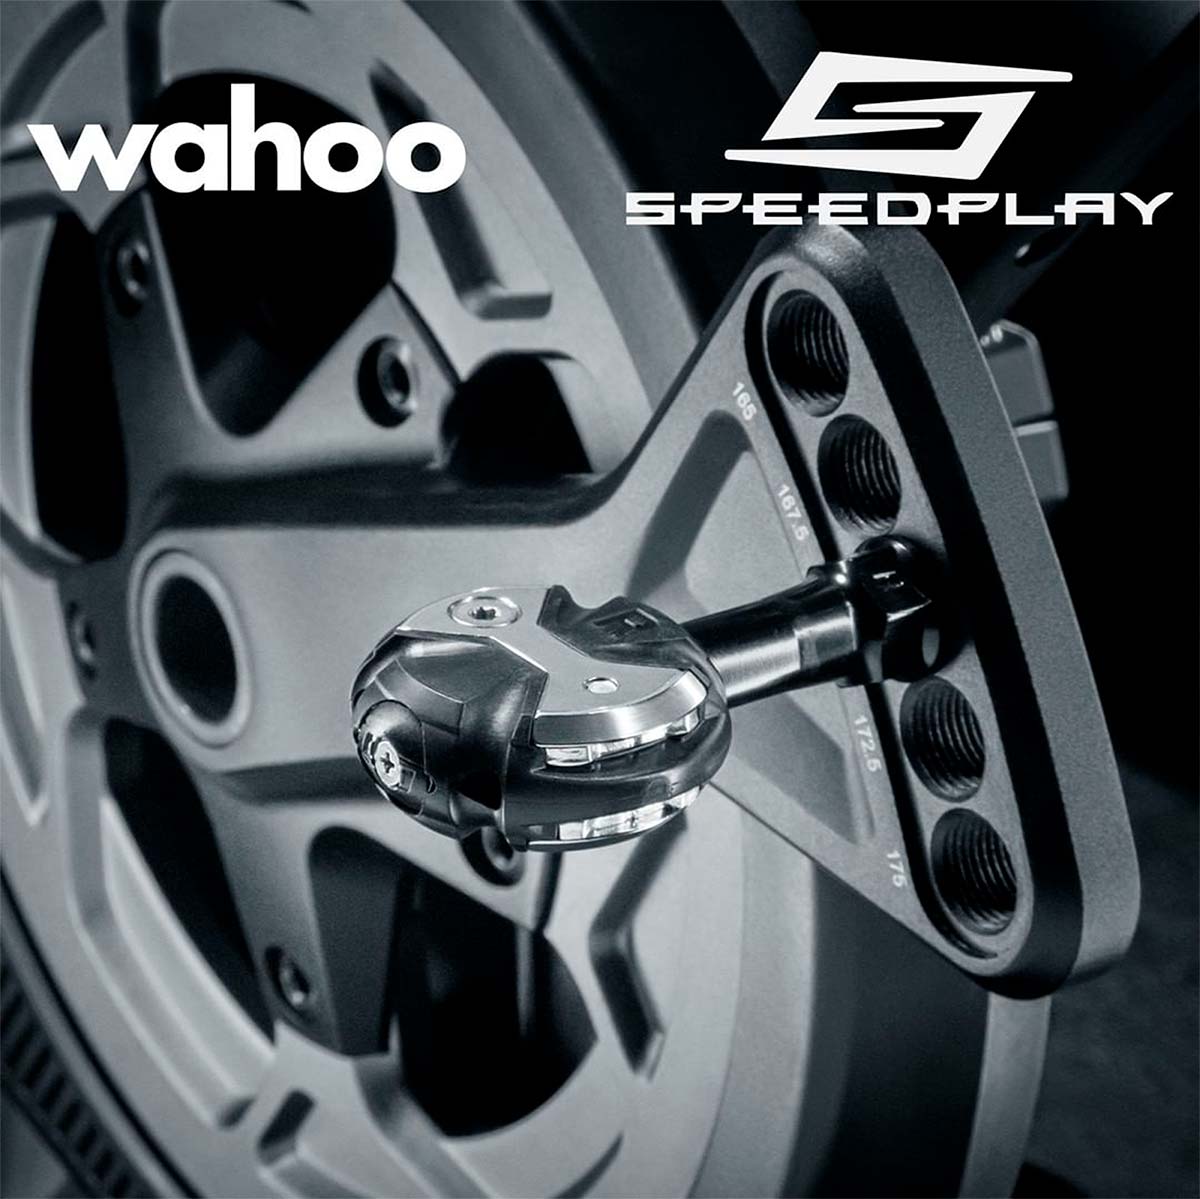 En TodoMountainBike: Wahoo Fitness compra Speedplay, la famosa marca de pedales de bicicleta